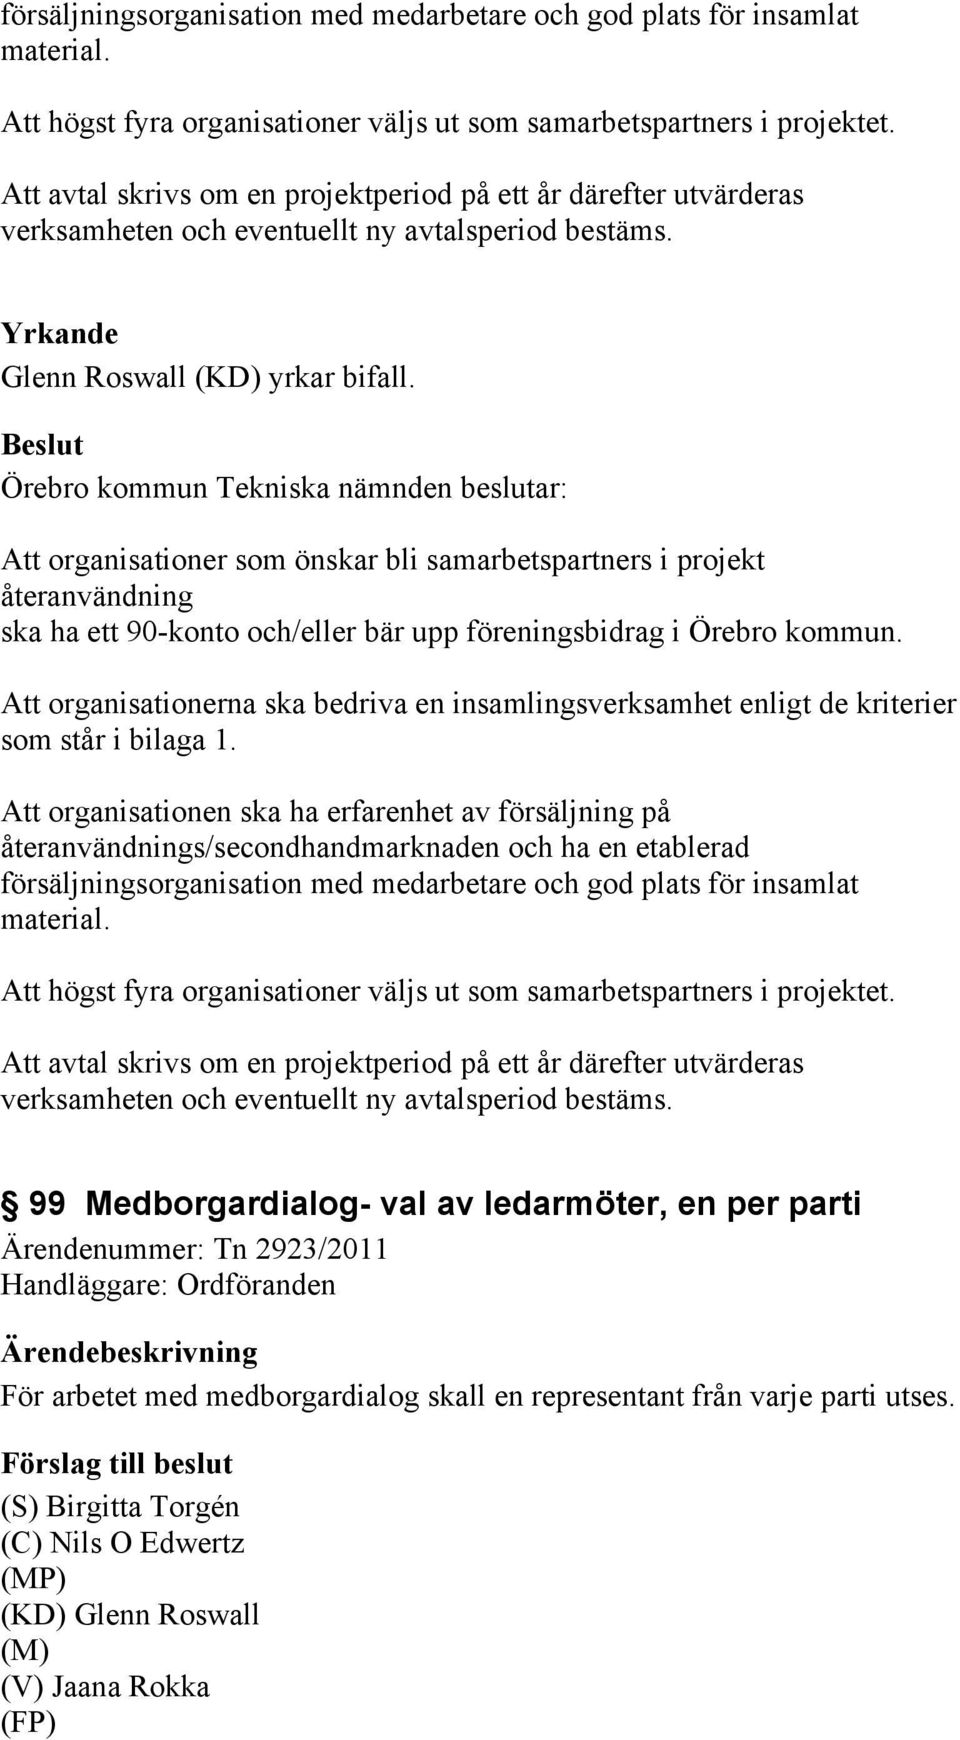 Örebro kommun Tekniska nämnden beslutar: Att organisationer som önskar bli samarbetspartners i projekt återanvändning ska ha ett 90-konto och/eller bär upp föreningsbidrag i Örebro kommun.